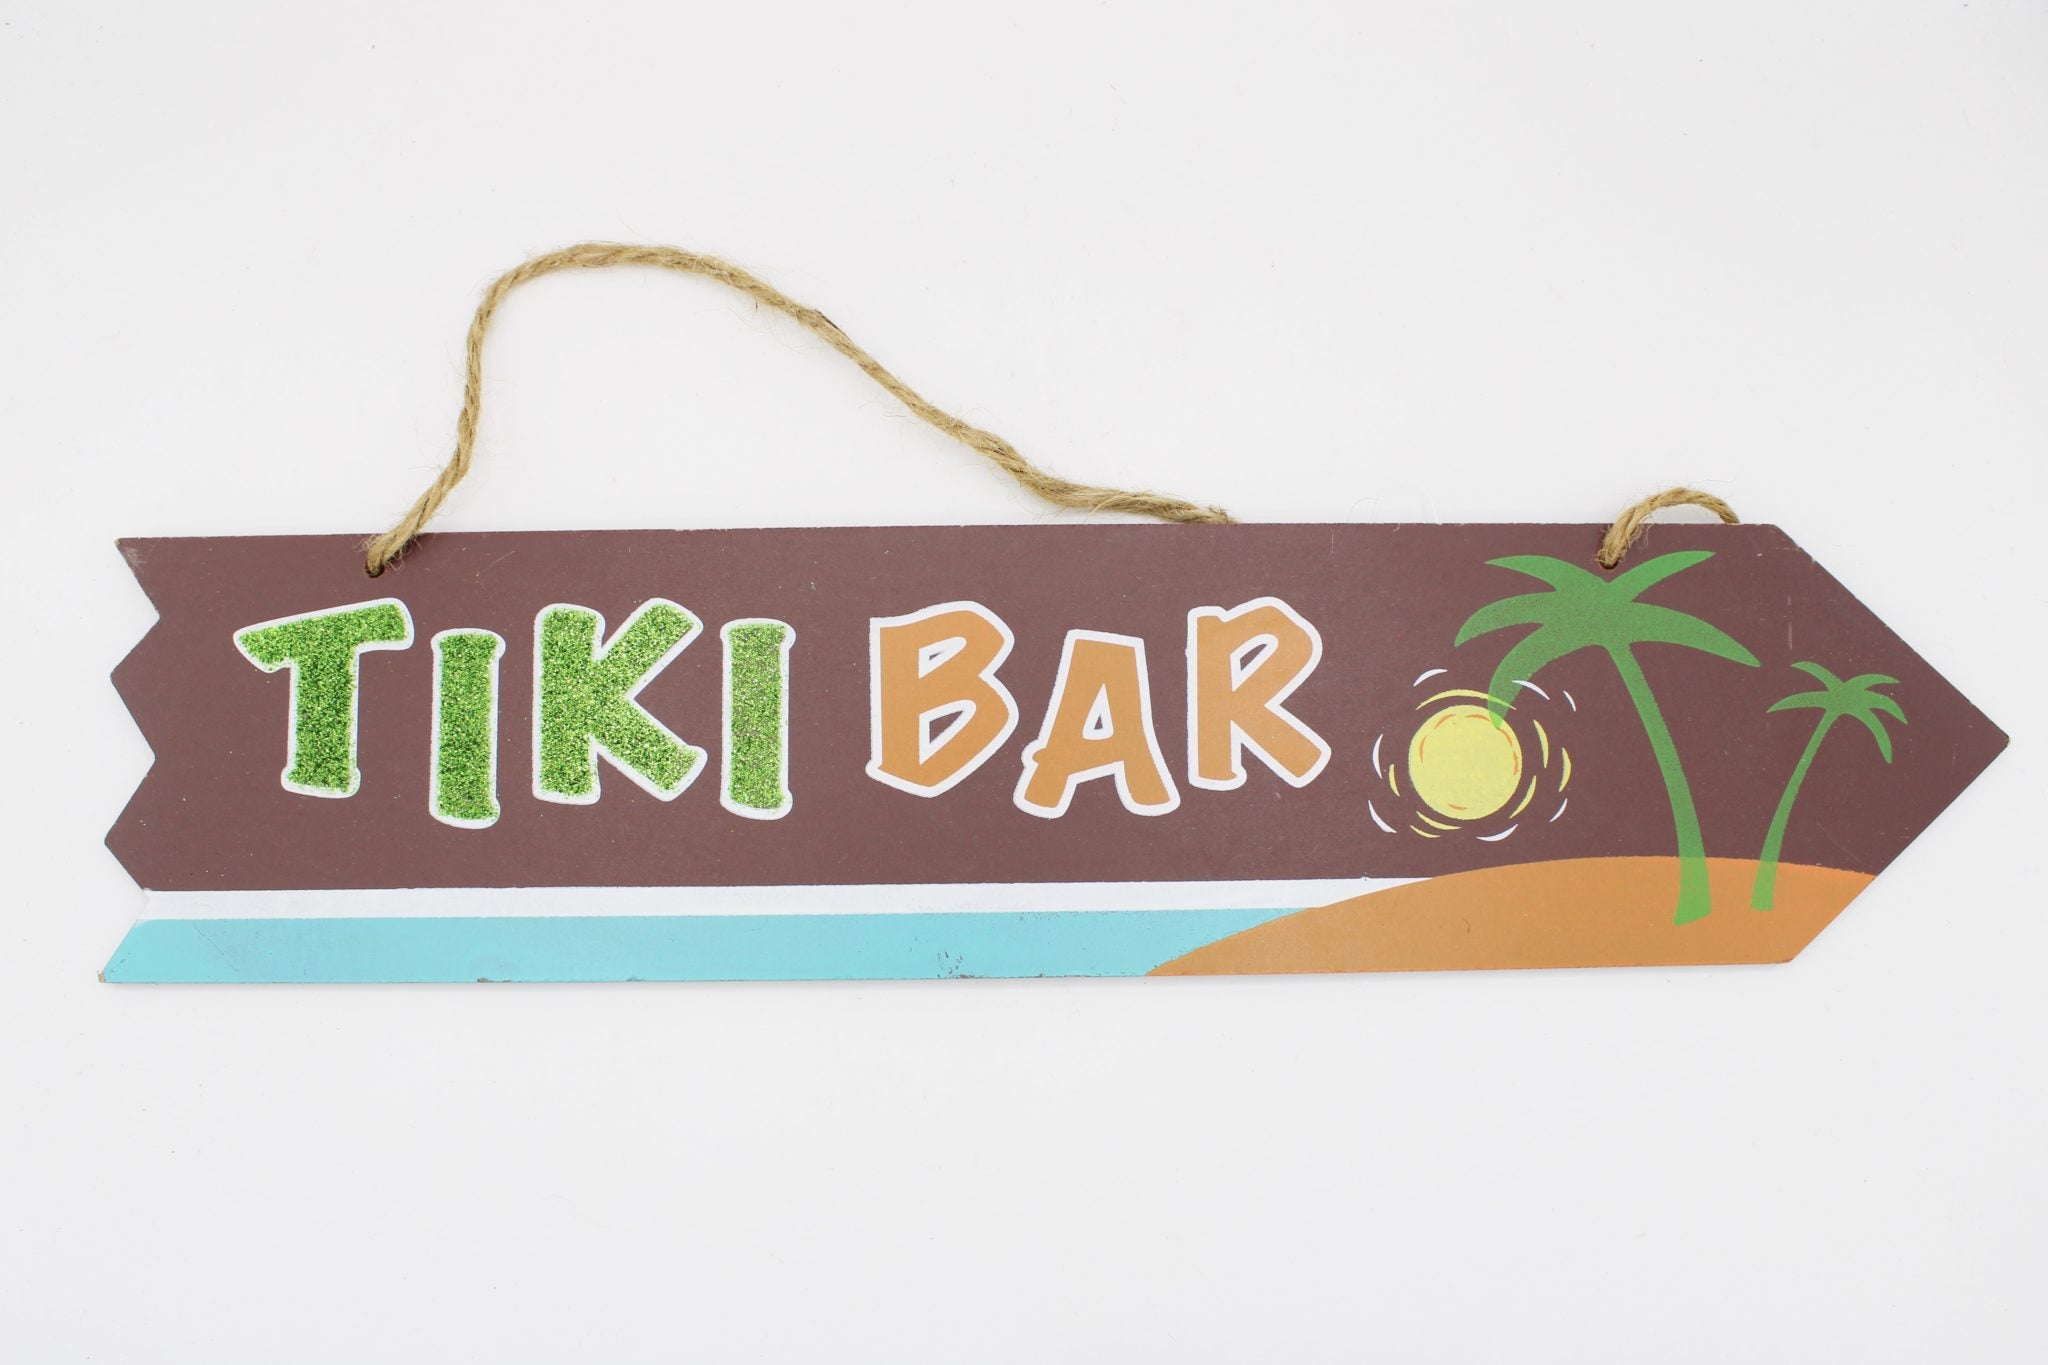 Tiki Bar Hanging Sign